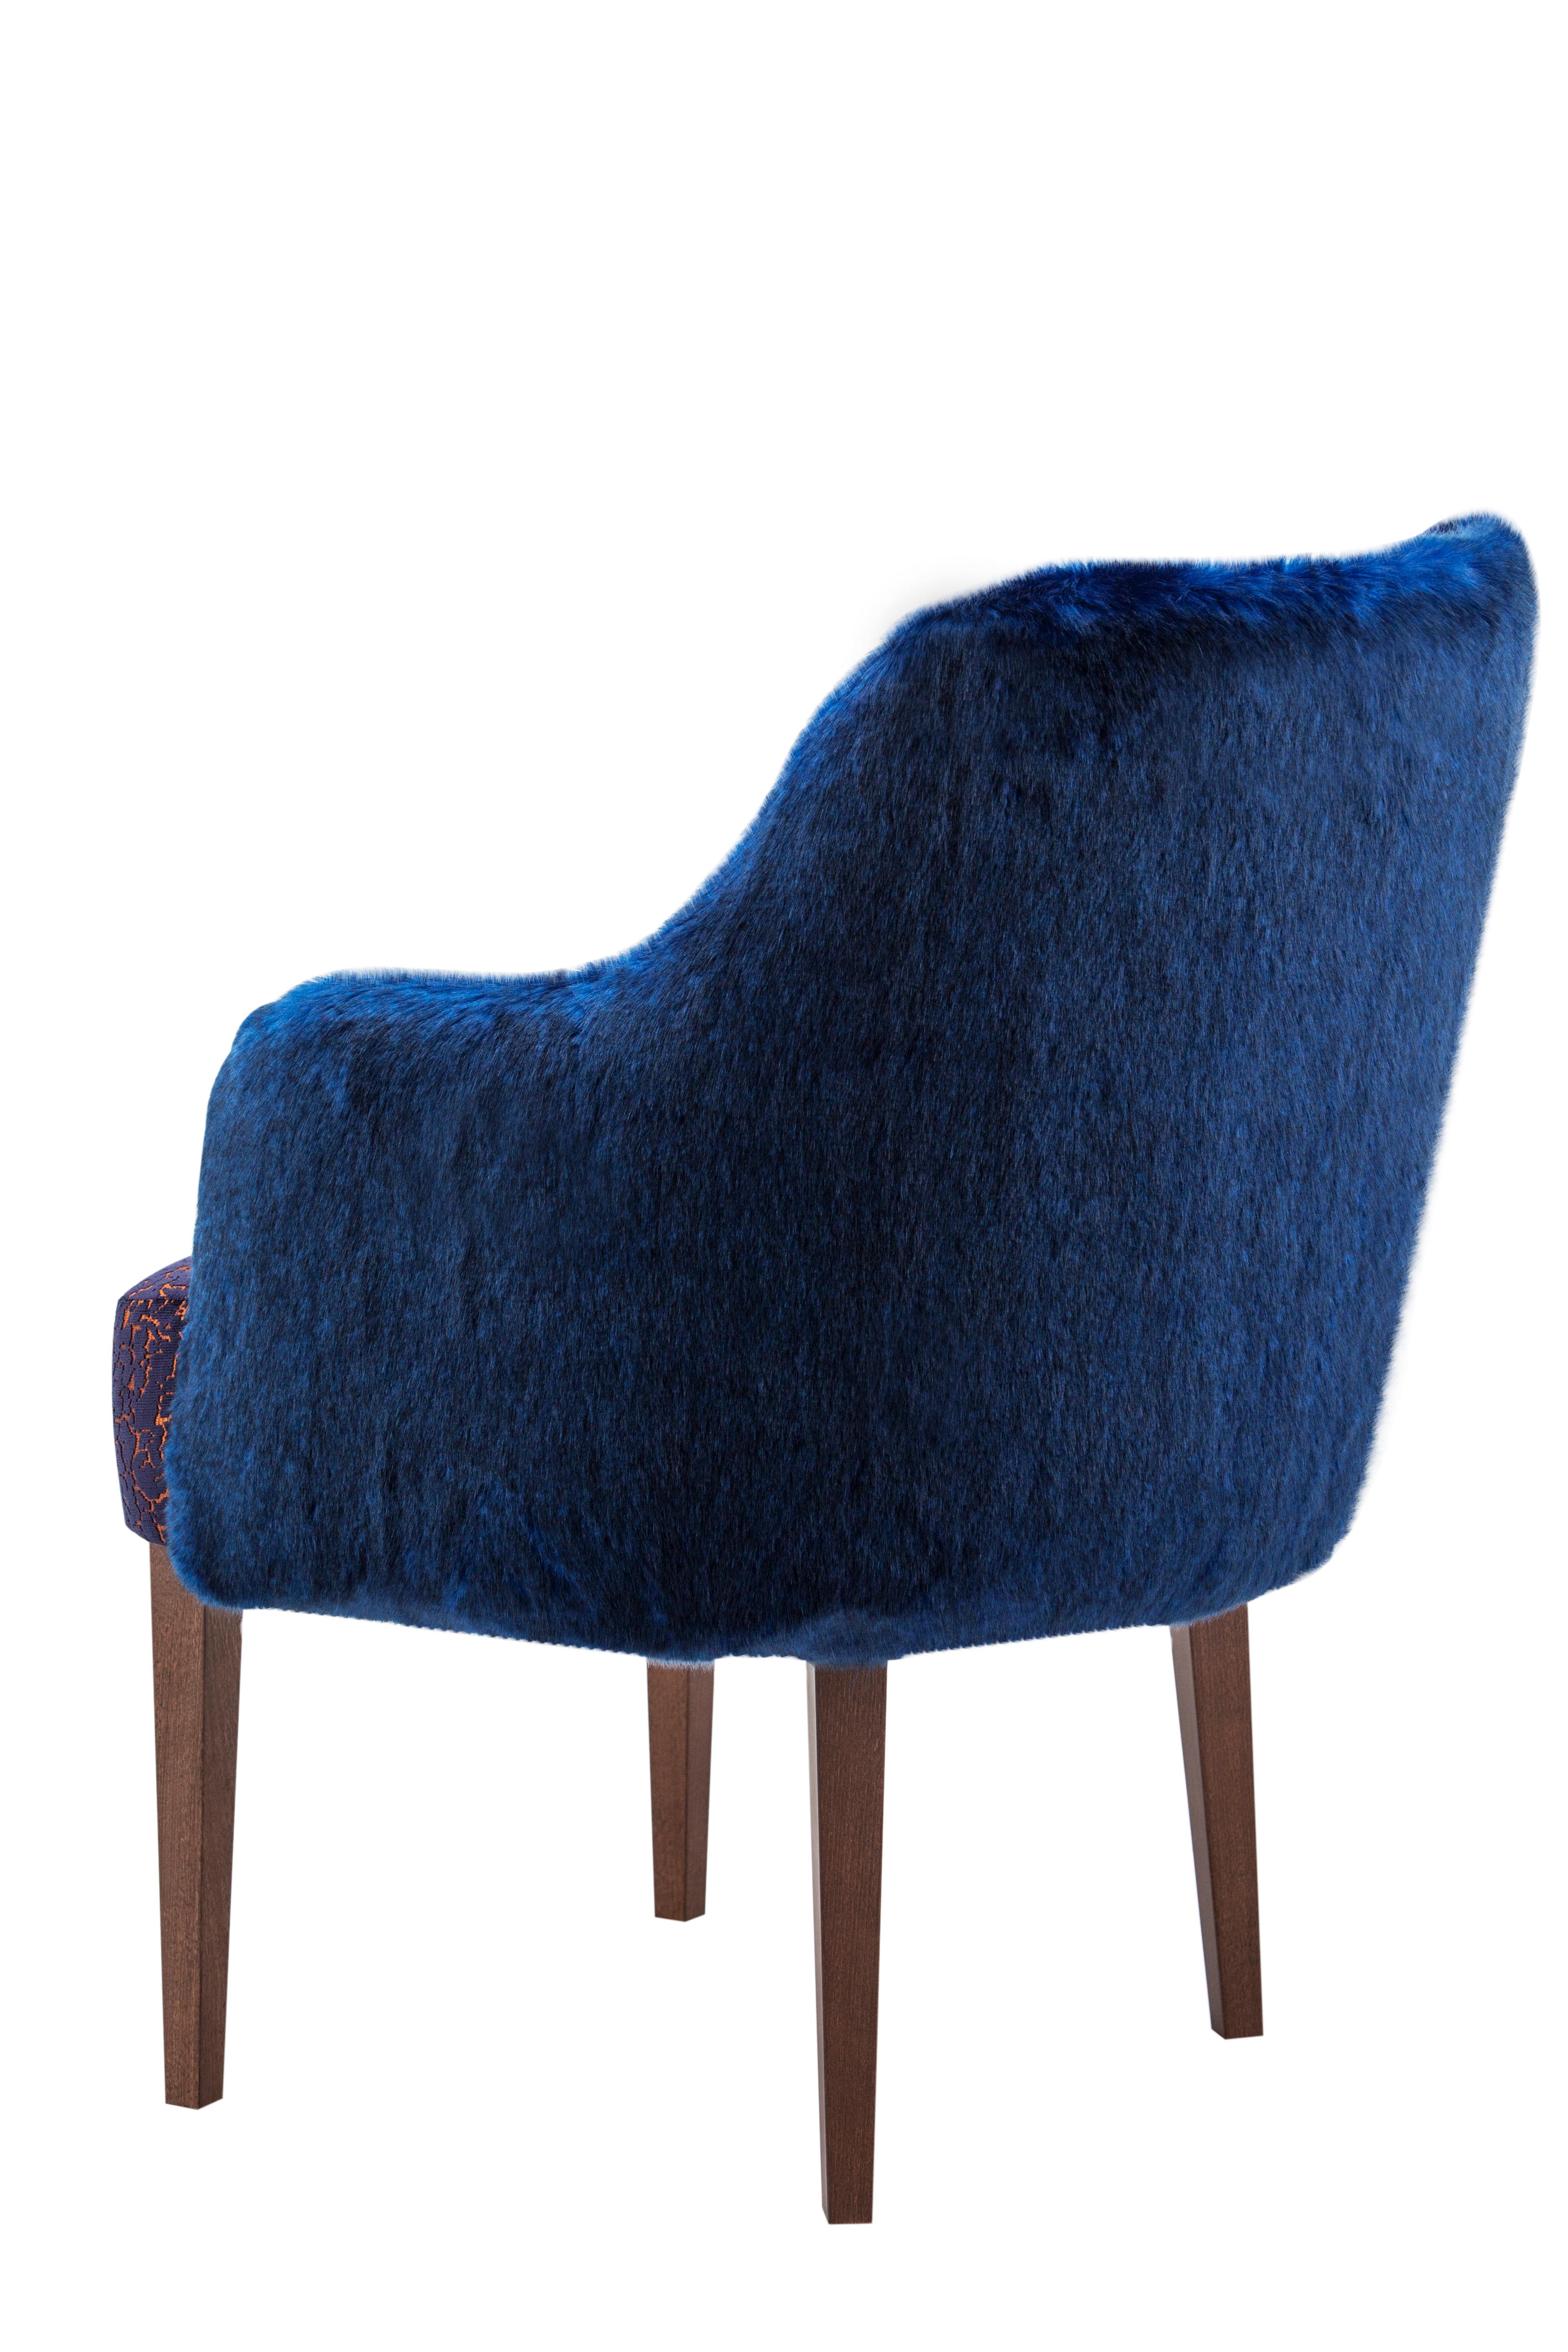 Stuhl Margot, moderne Collection, handgefertigt in Portugal - Europa von GF Modern.

Der Margot Pelz-Esszimmerstuhl ist ein Art-Deco-Stück, das die Standards des modernen Wohnens neu definiert. Das Zusammenspiel von weichen, anmutigen Linien und